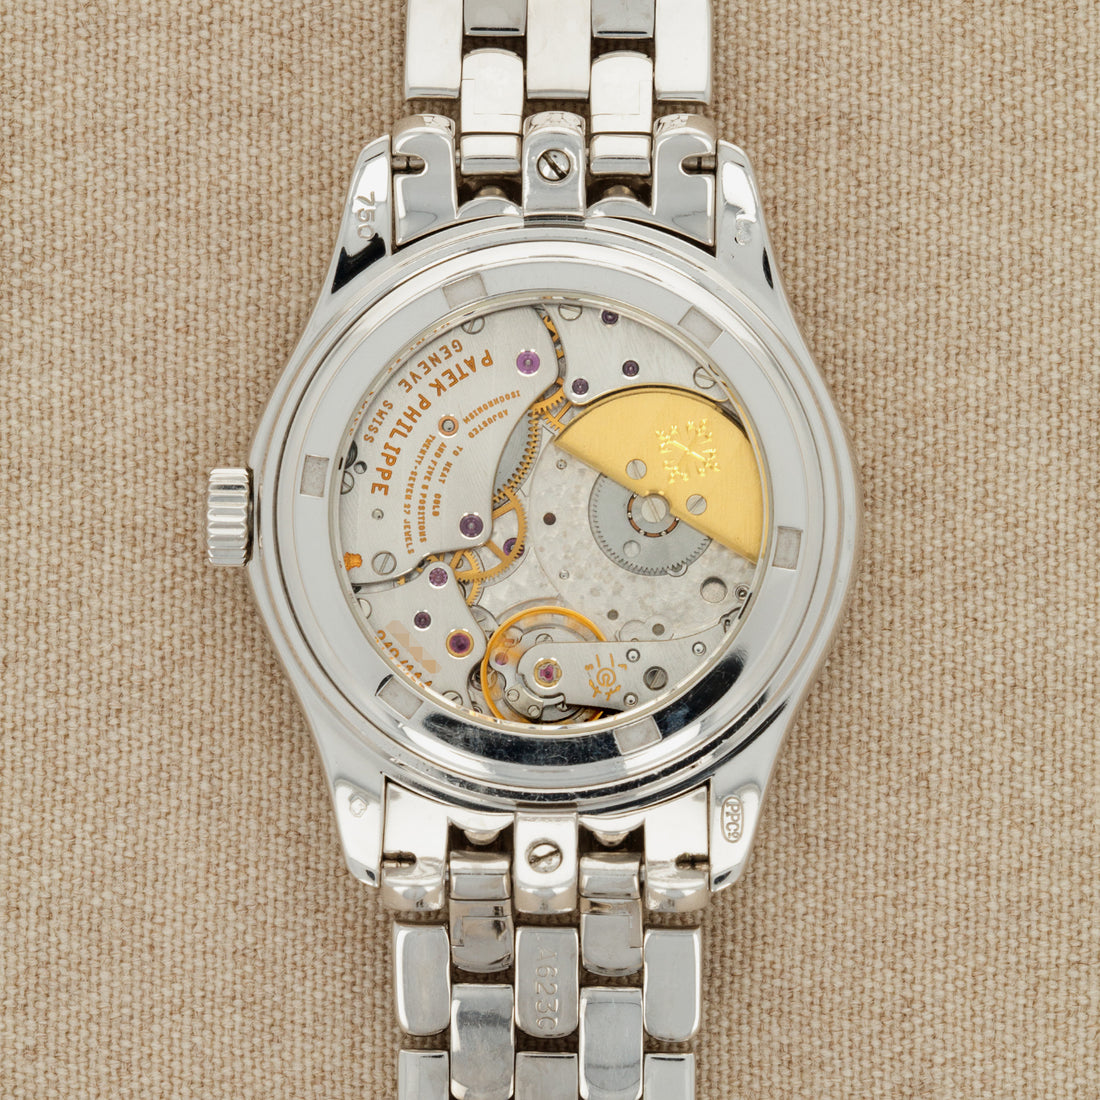 Patek Philippe White Gold Perpetual Calendar Watch Ref. 5136